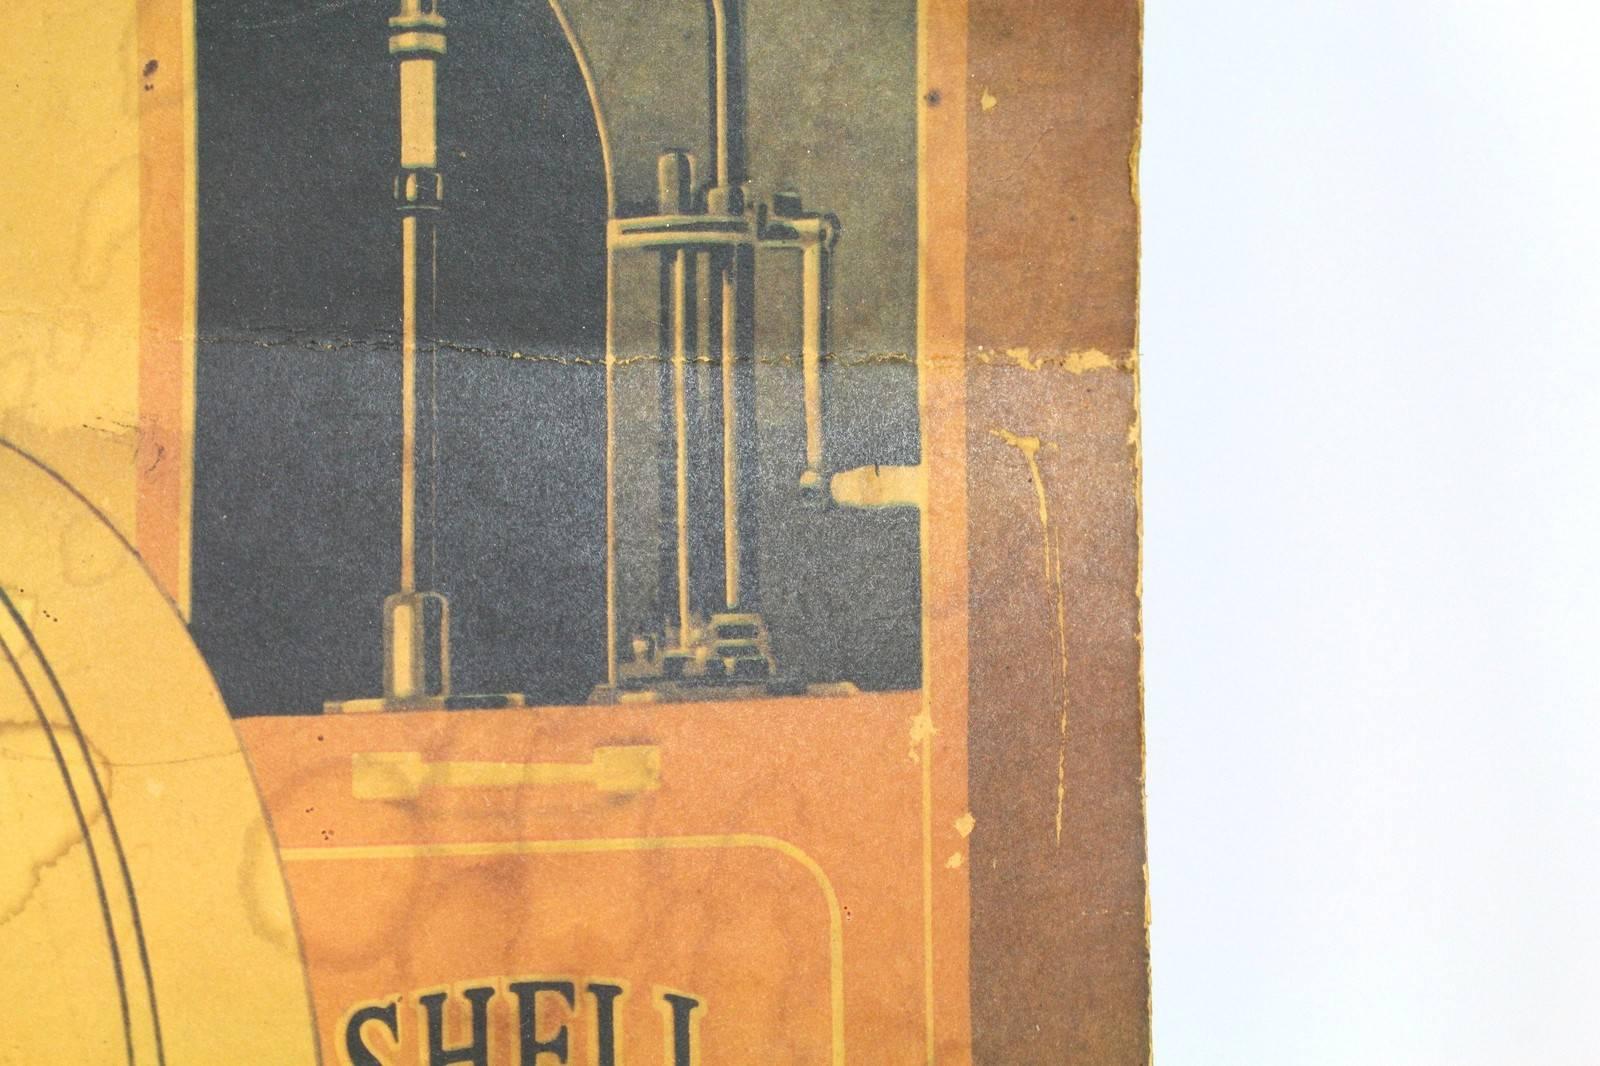 shell oil poster